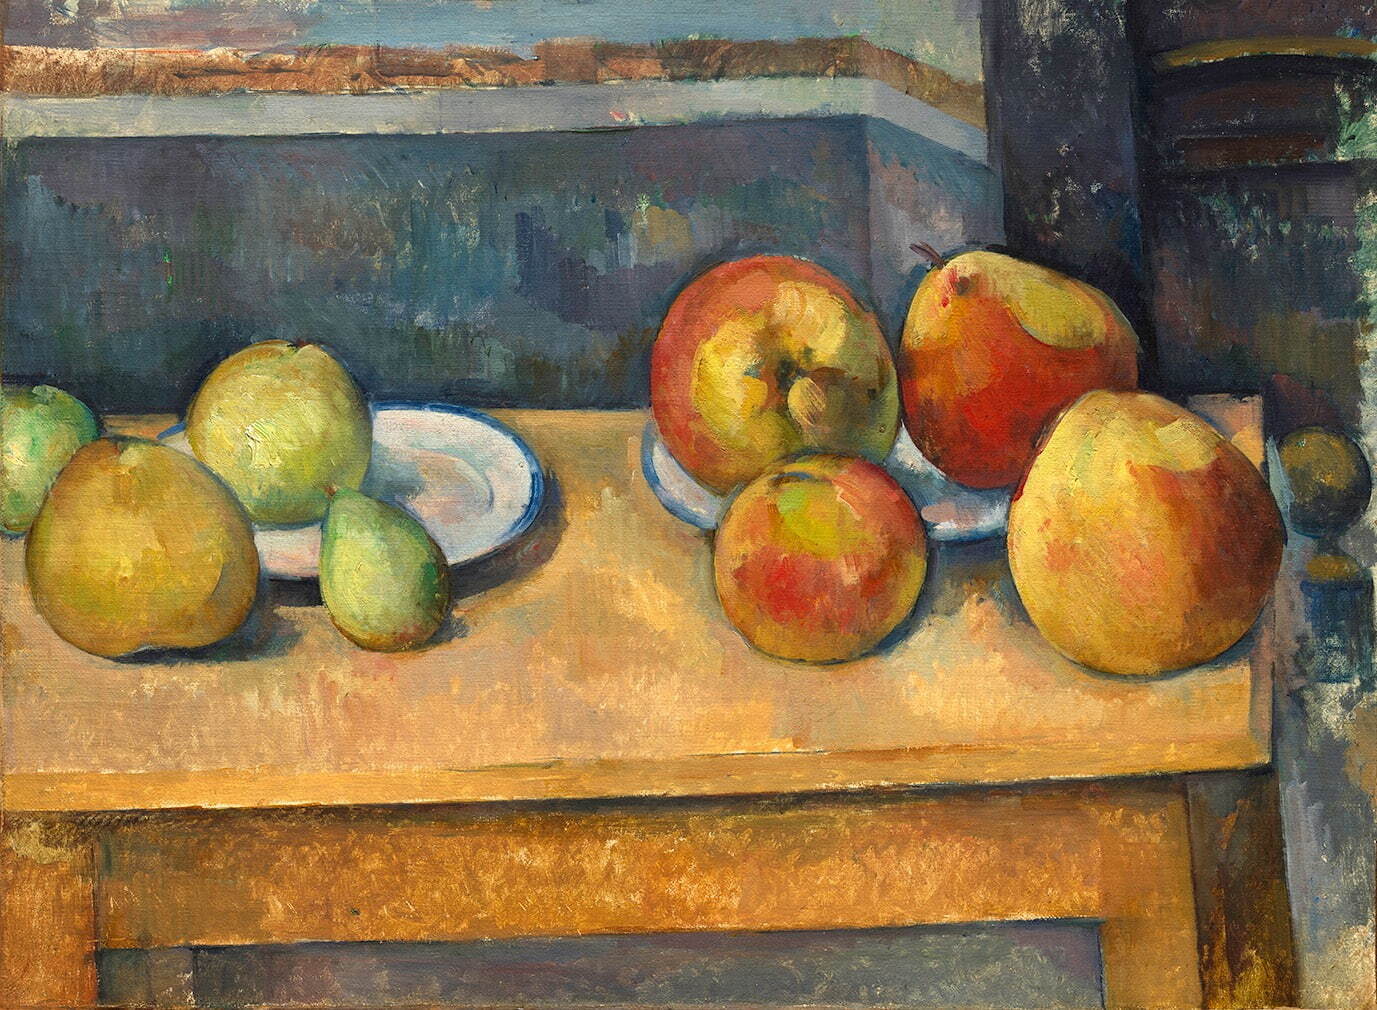 ポール・セザンヌ《リンゴと洋ナシのある静物》1891-92年頃
Bequest of Stephen C. Clark, 1960 / 61.101.3
ニューヨーク、メトロポリタン美術館